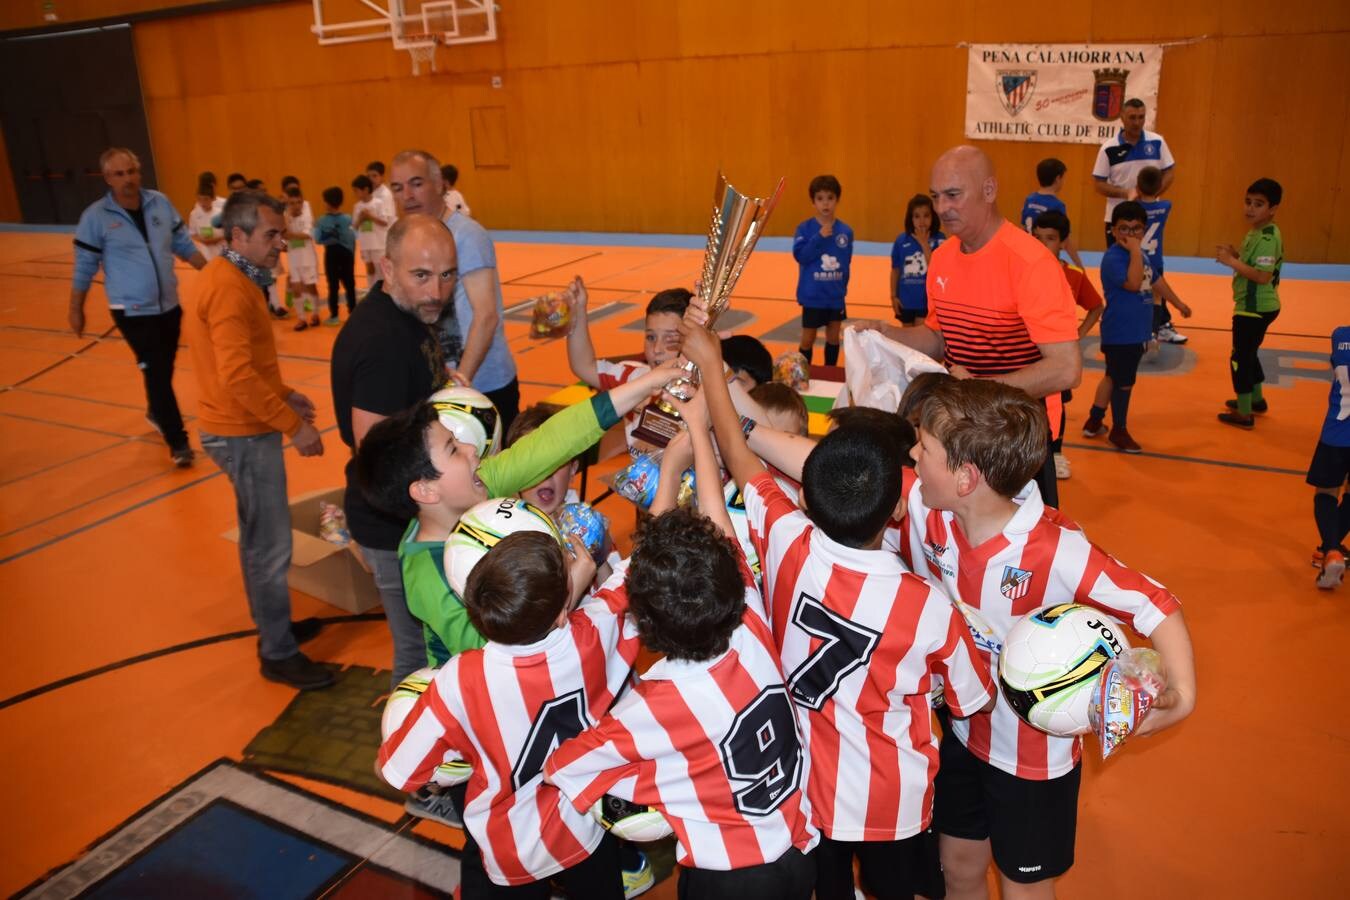 XVI trofeo fútbol sala Pequeñín de la Peña Calahorrana Athletic Club de Bilbao disputado hoy miércoles en el pabellón Europa de Calahorra y que ha ganado el Autol.